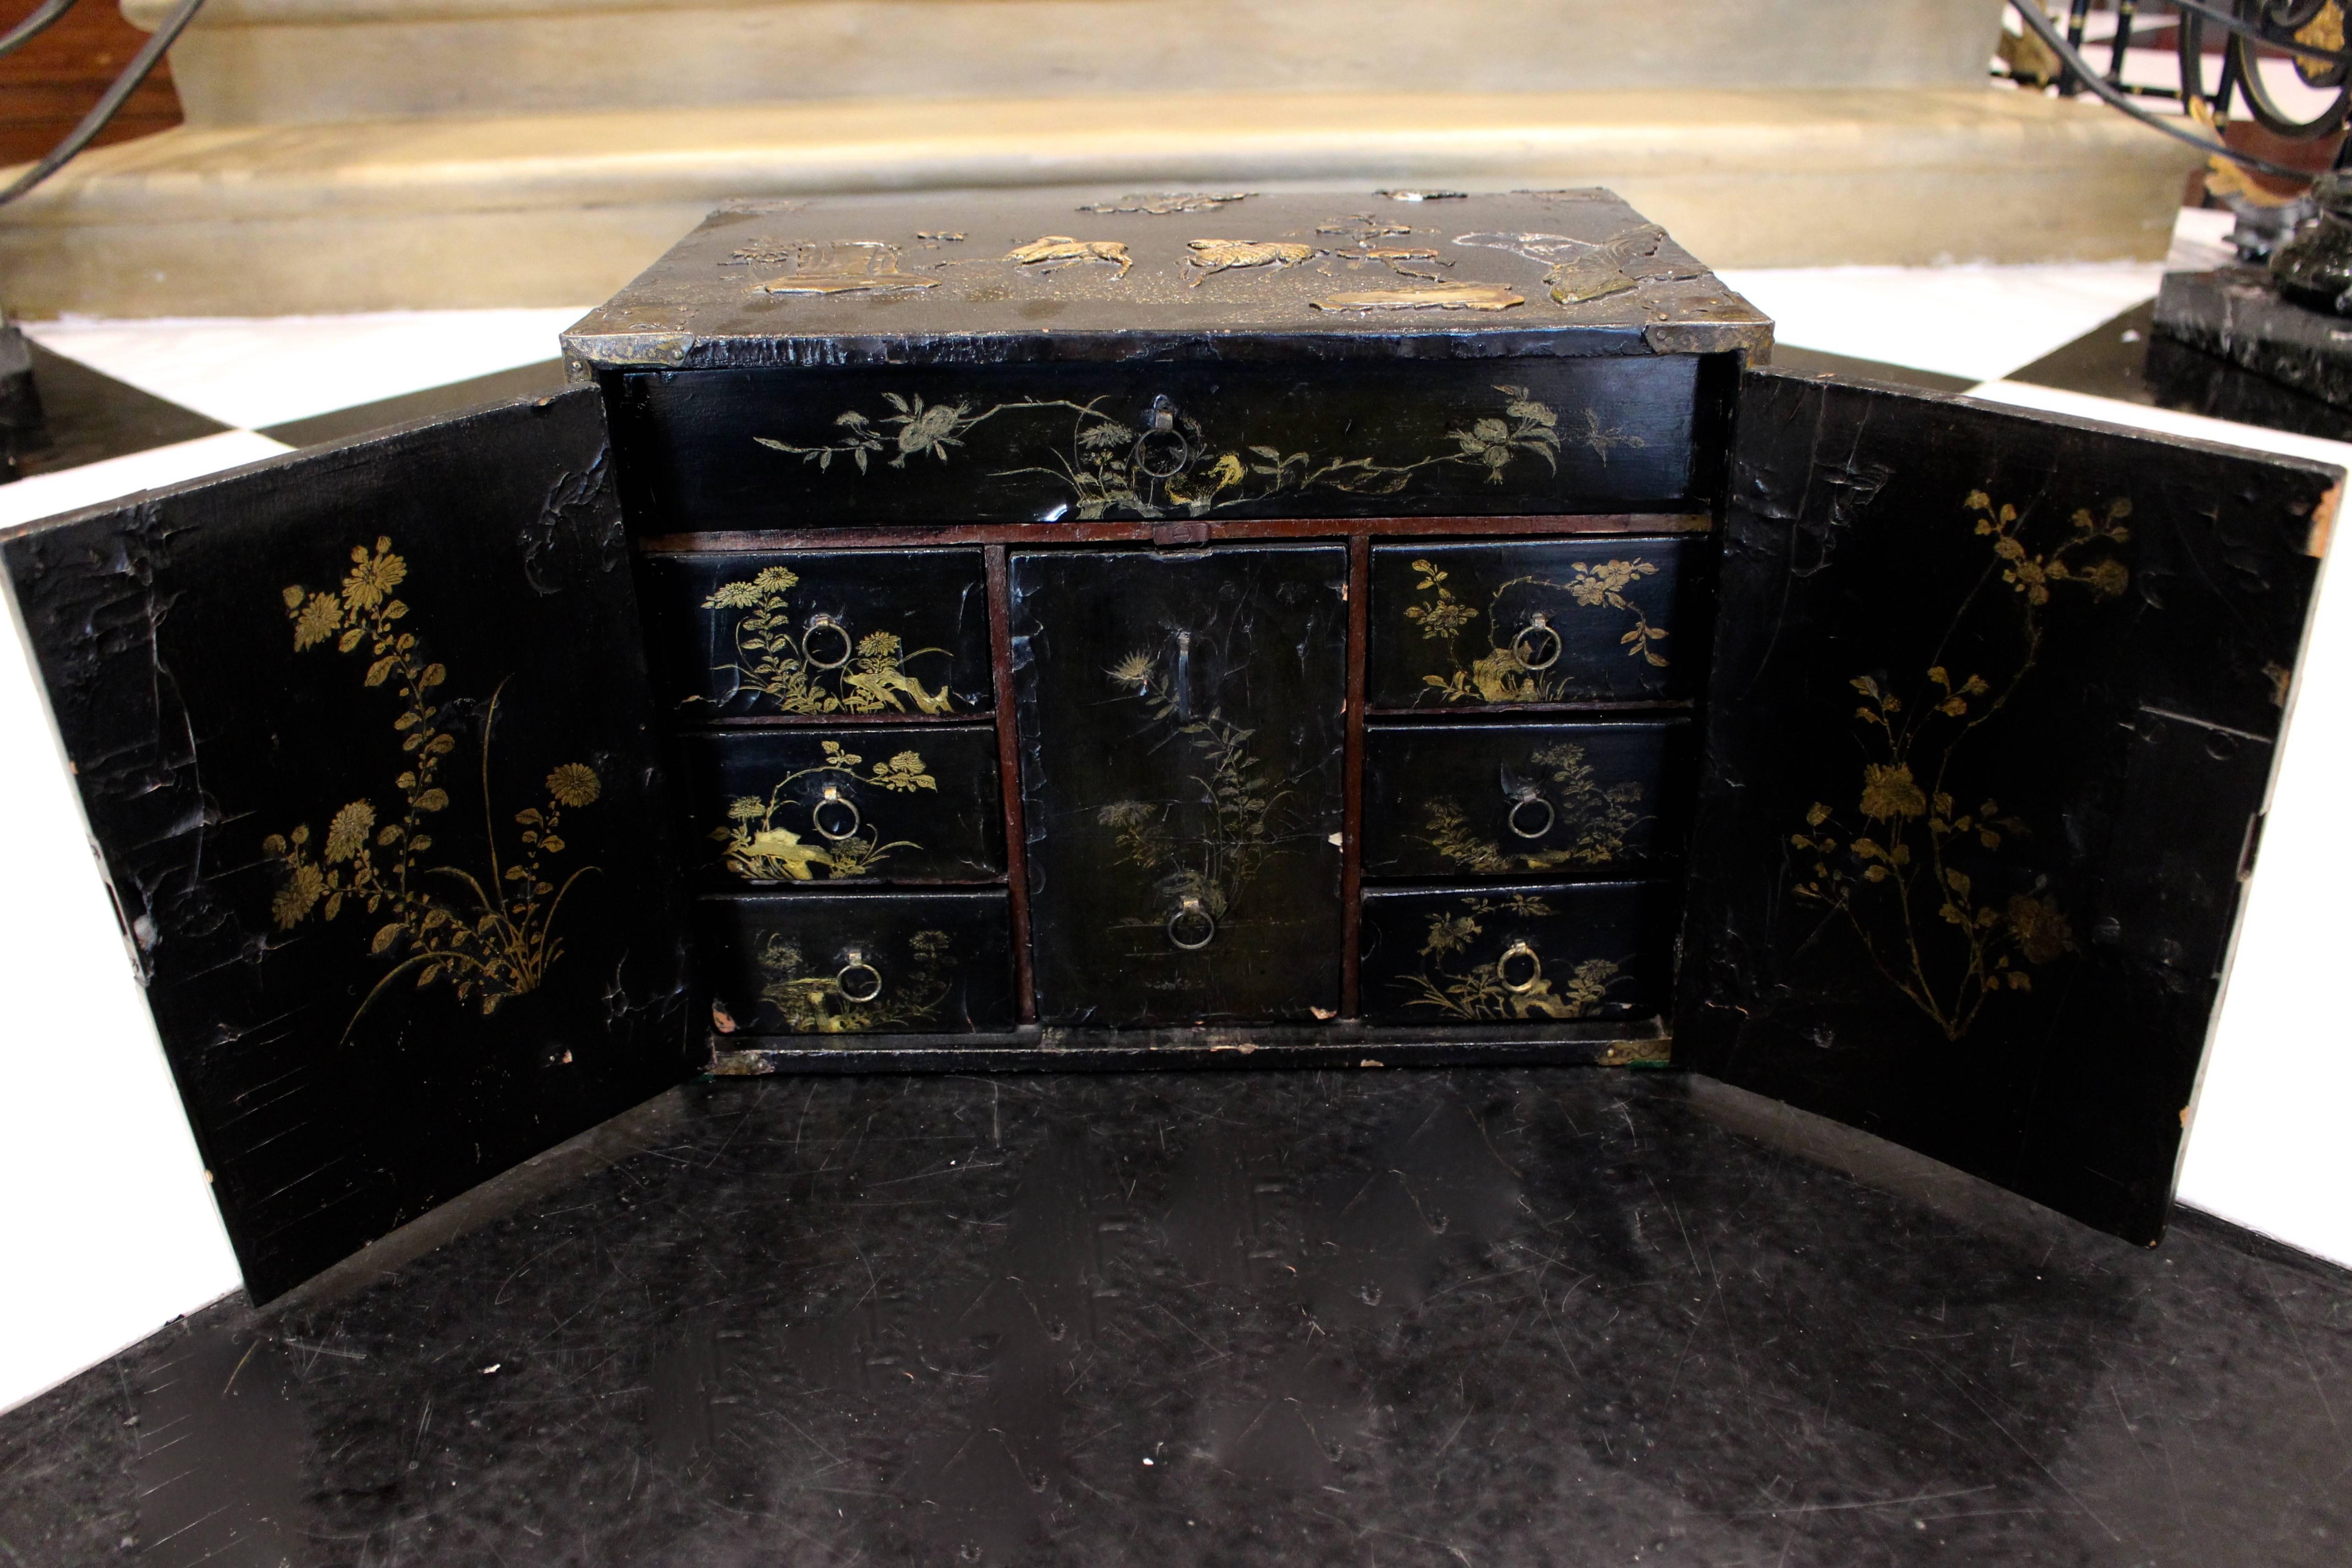 Petit meuble chinois en bois laqué noir de la fin du XVIIIe siècle, décoré d'un décor animalier en relief dans un paysage traditionnel. Ce meuble de forme rectangulaire est finement incrusté d'un ensemble de pierres de couleur dans des motifs en